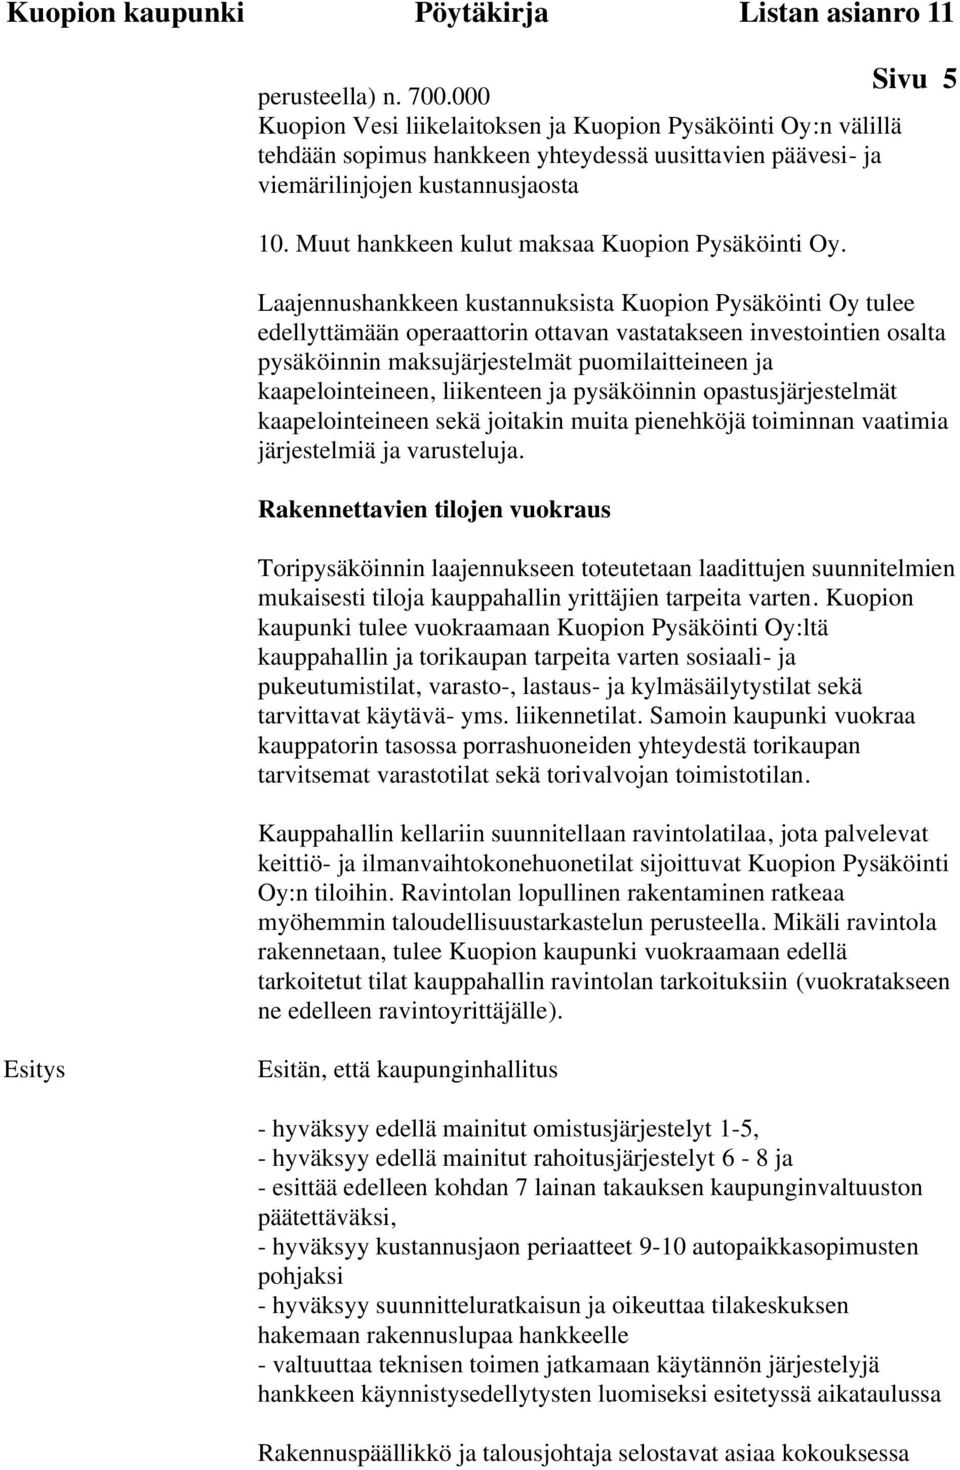 Laajennushankkeen kustannuksista Kuopion Pysäköinti Oy tulee edellyttämään operaattorin ottavan vastatakseen investointien osalta pysäköinnin maksujärjestelmät puomilaitteineen ja kaapelointeineen,